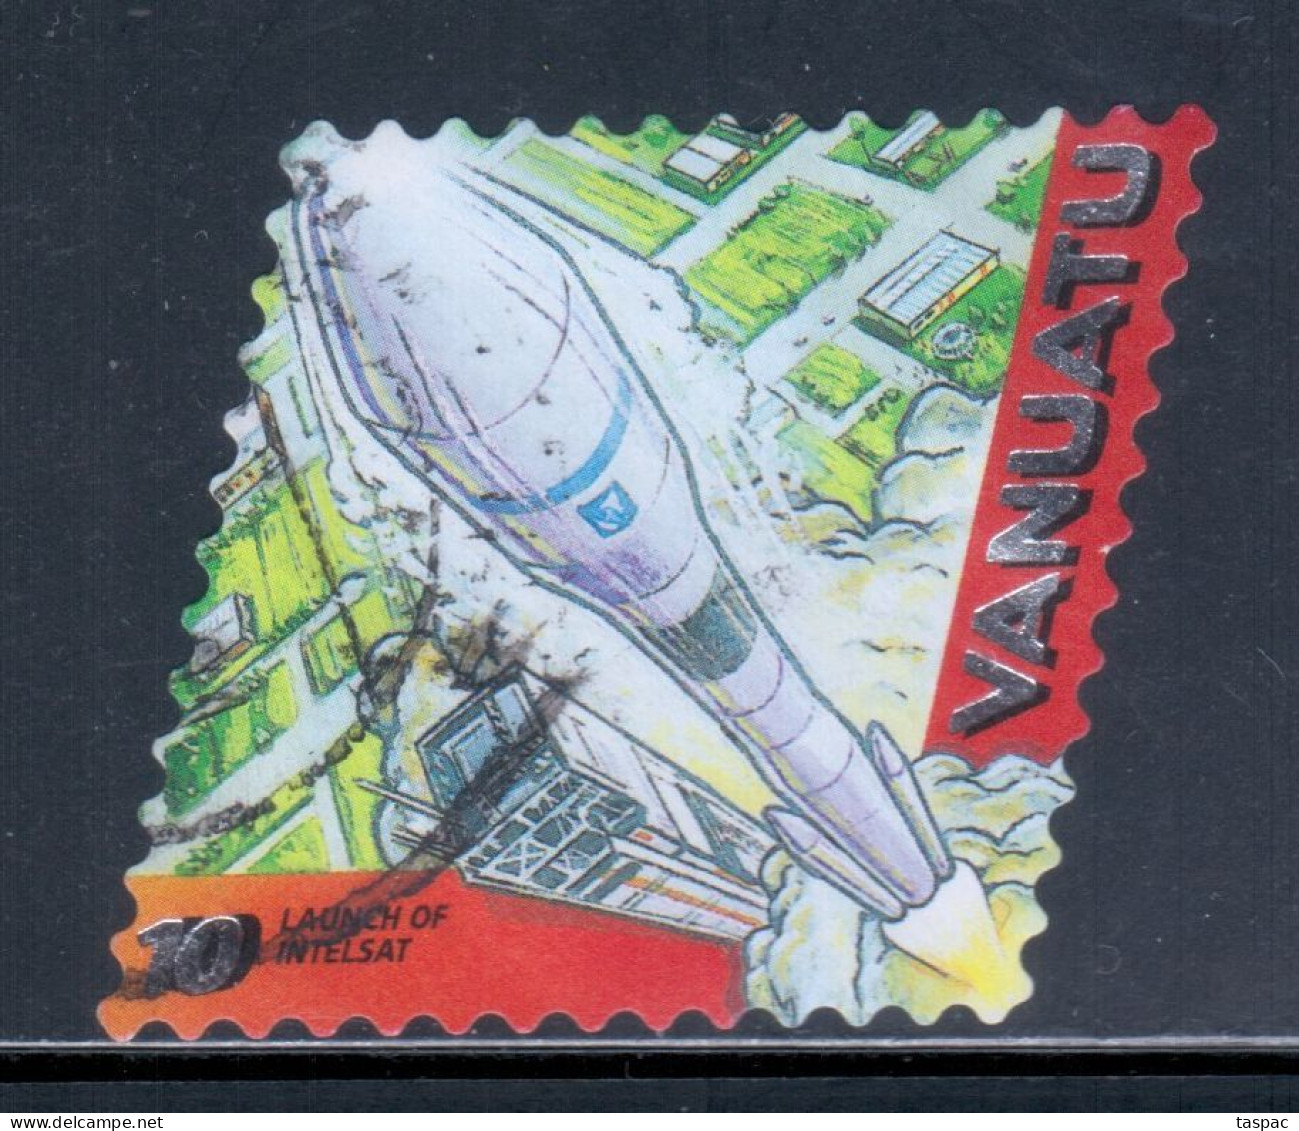 Vanuatu 2000 Mi# 1112 Used - Short Set - Launch Of Intelsat / Space - Oceanië